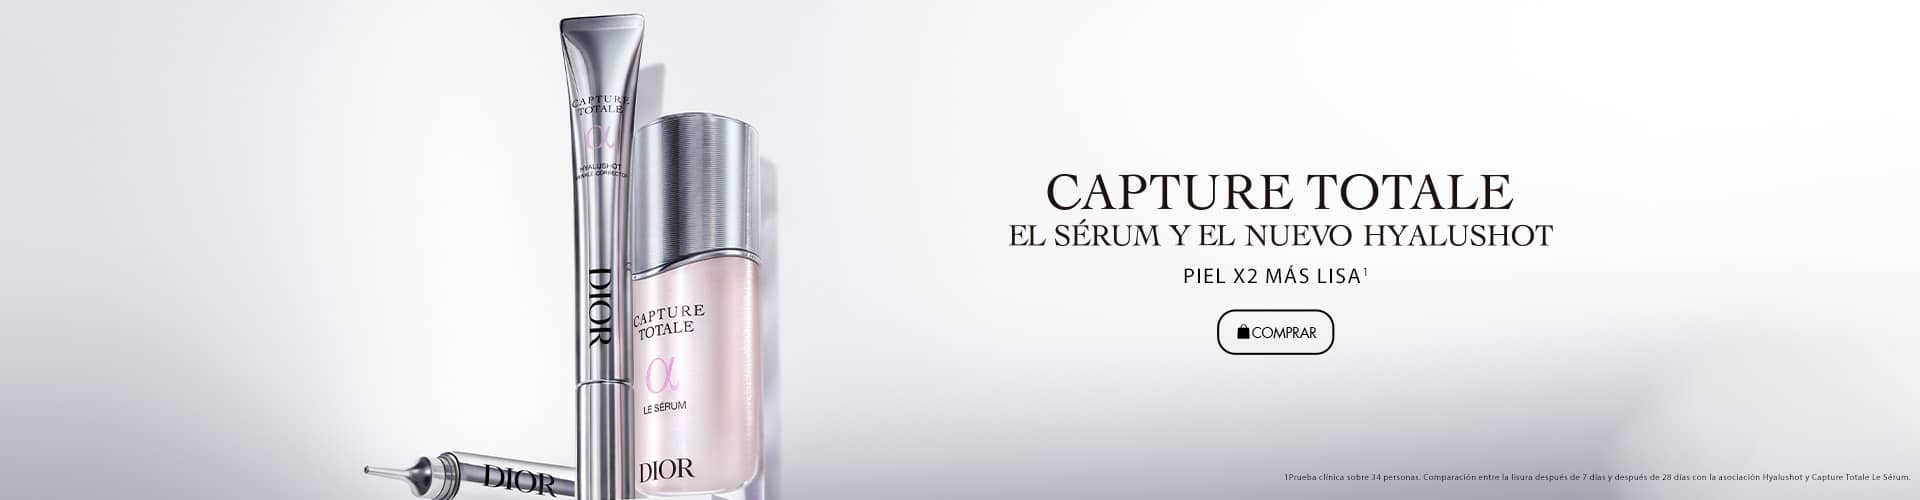 Dior Capture Totale | El Sérum y El Nuevo Hyalushot | Prieto.es